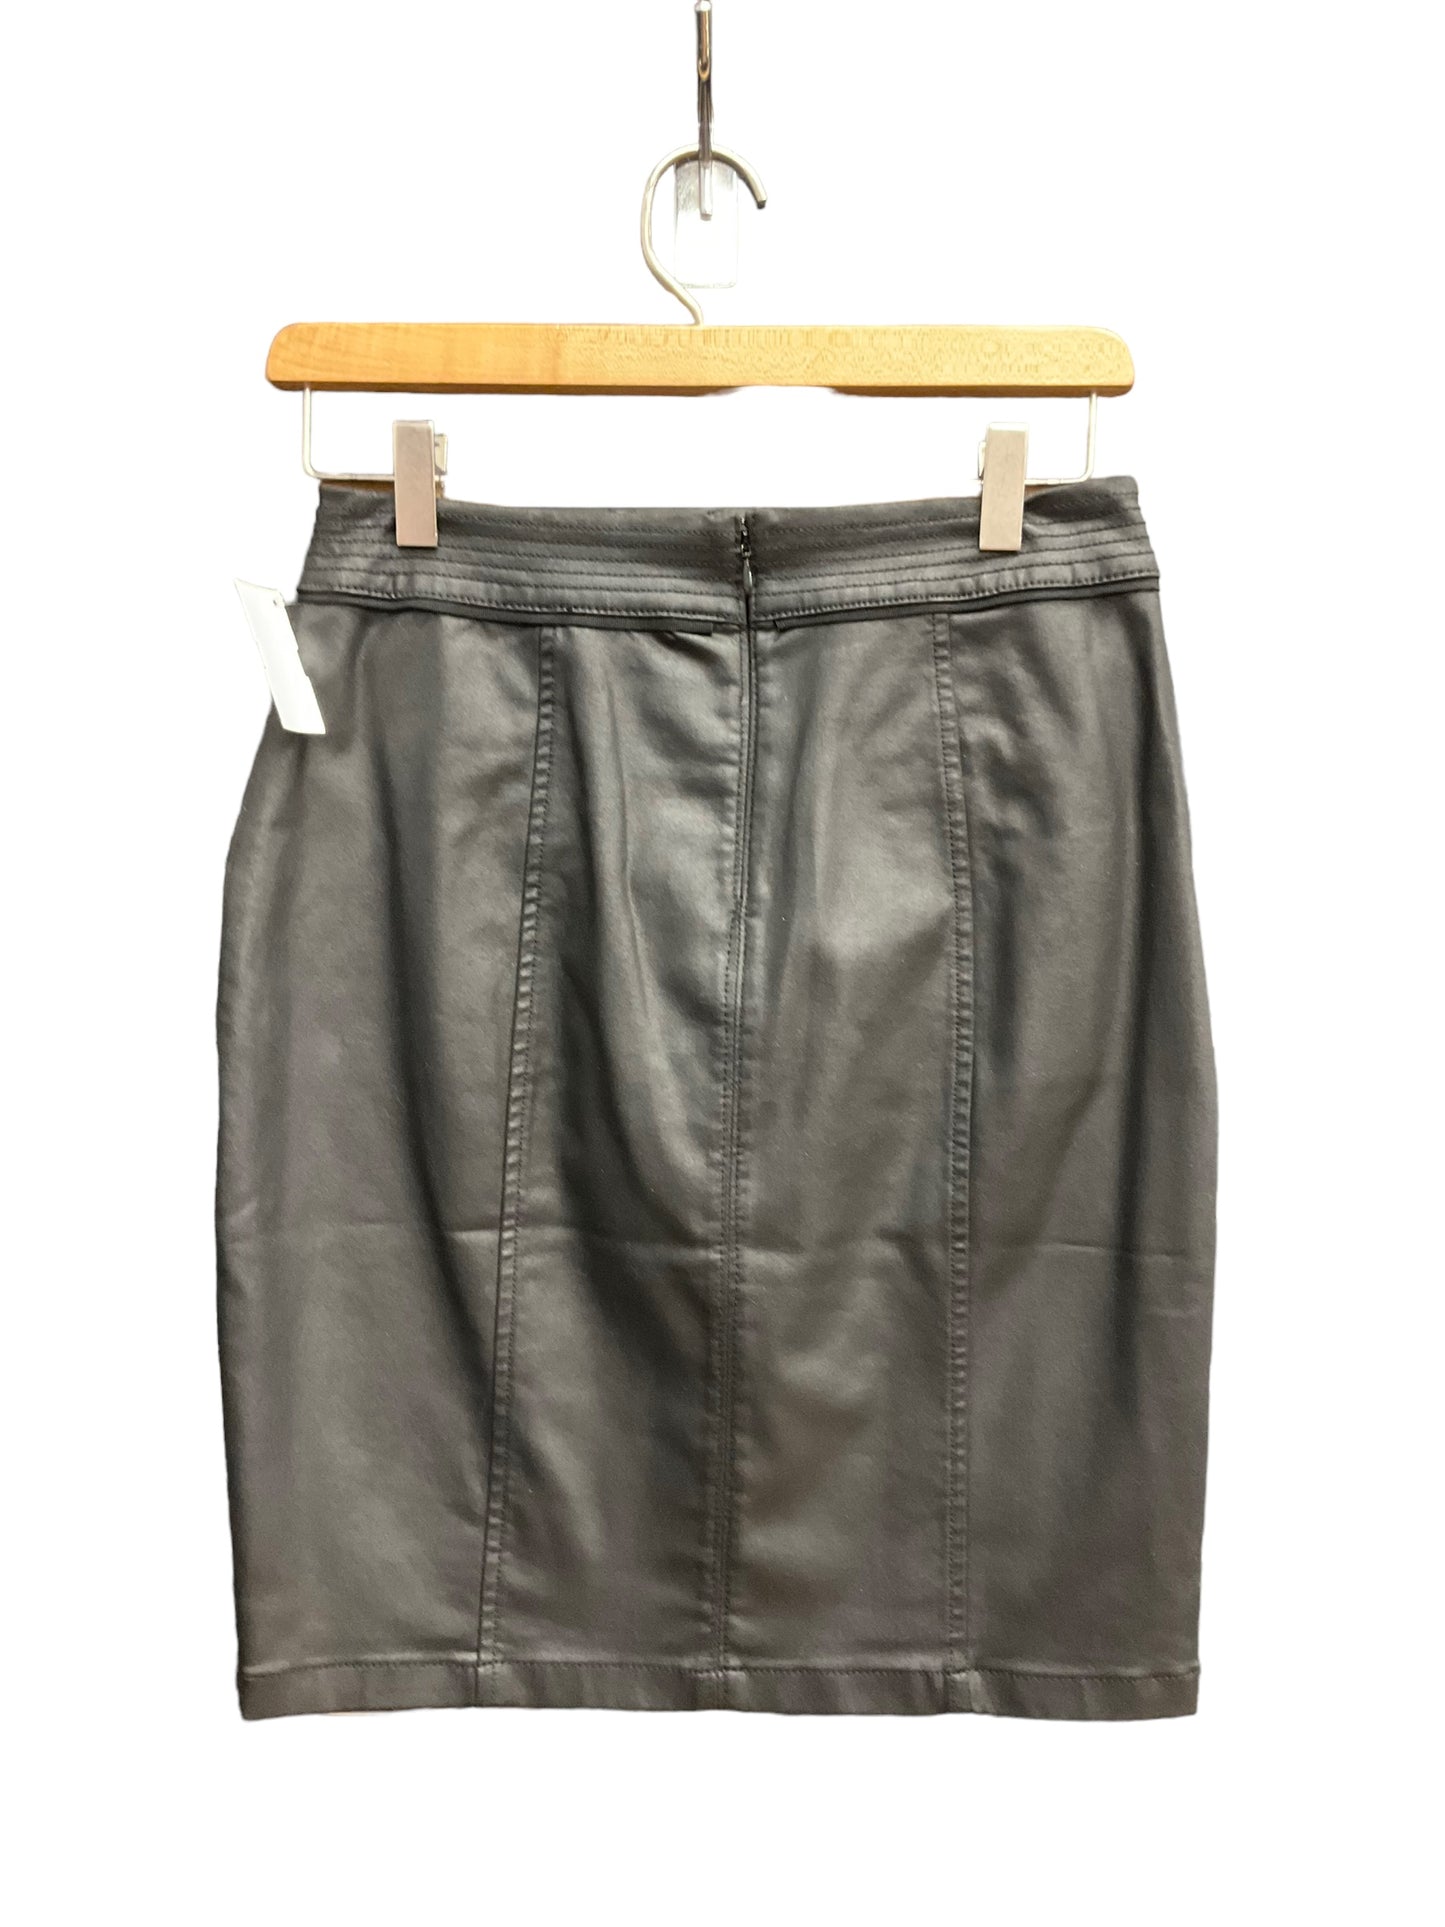 Skirt Mini & Short By White House Black Market  Size: 0